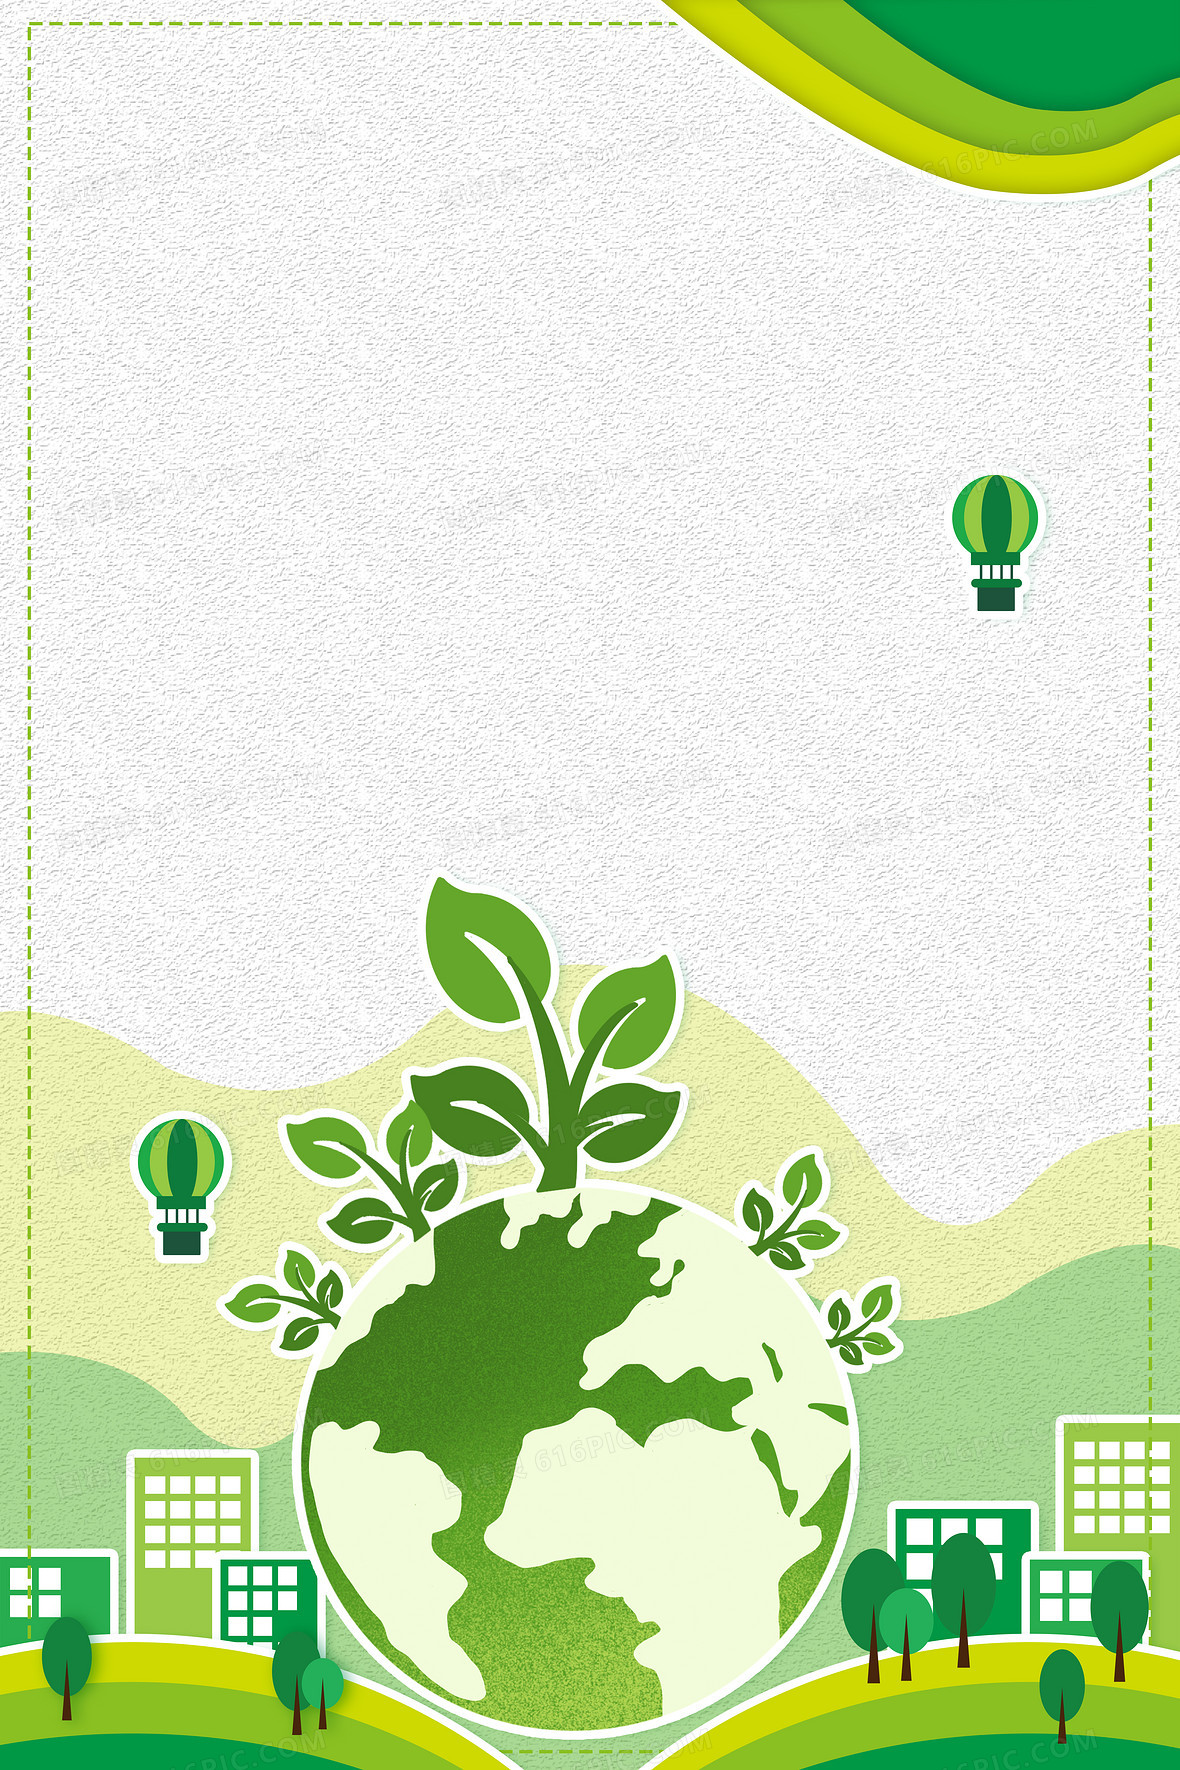 绿色地球环境保护世界卫生日背景jpgpsd环境保护海报背景模板jpgpsd